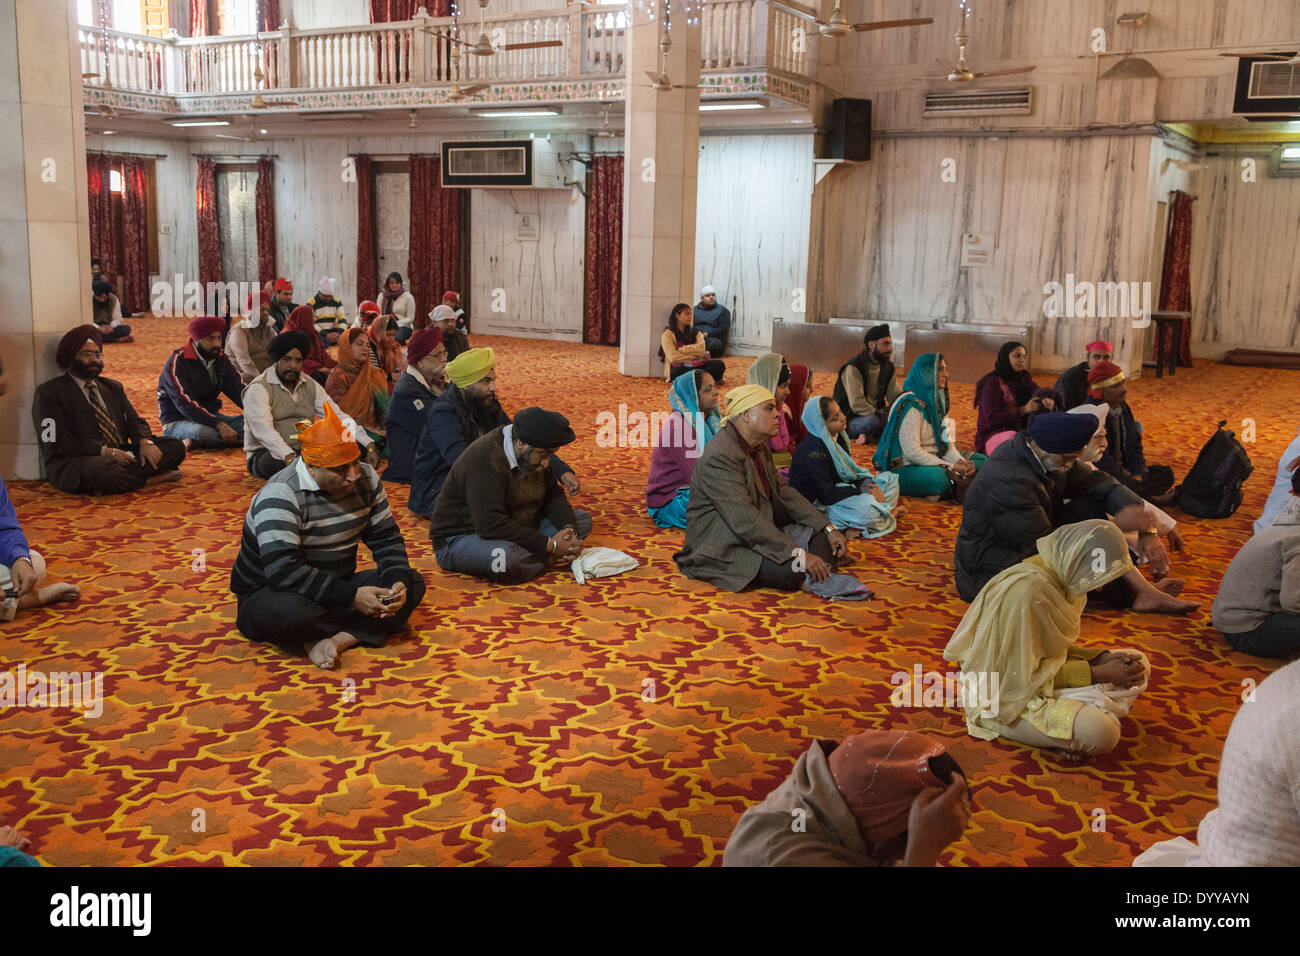 New Delhi, India. Adoratori all'interno di un tempio sikh (Bangla Sahib Gurudwara) in attesa di un servizio di preghiera per iniziare. Foto Stock